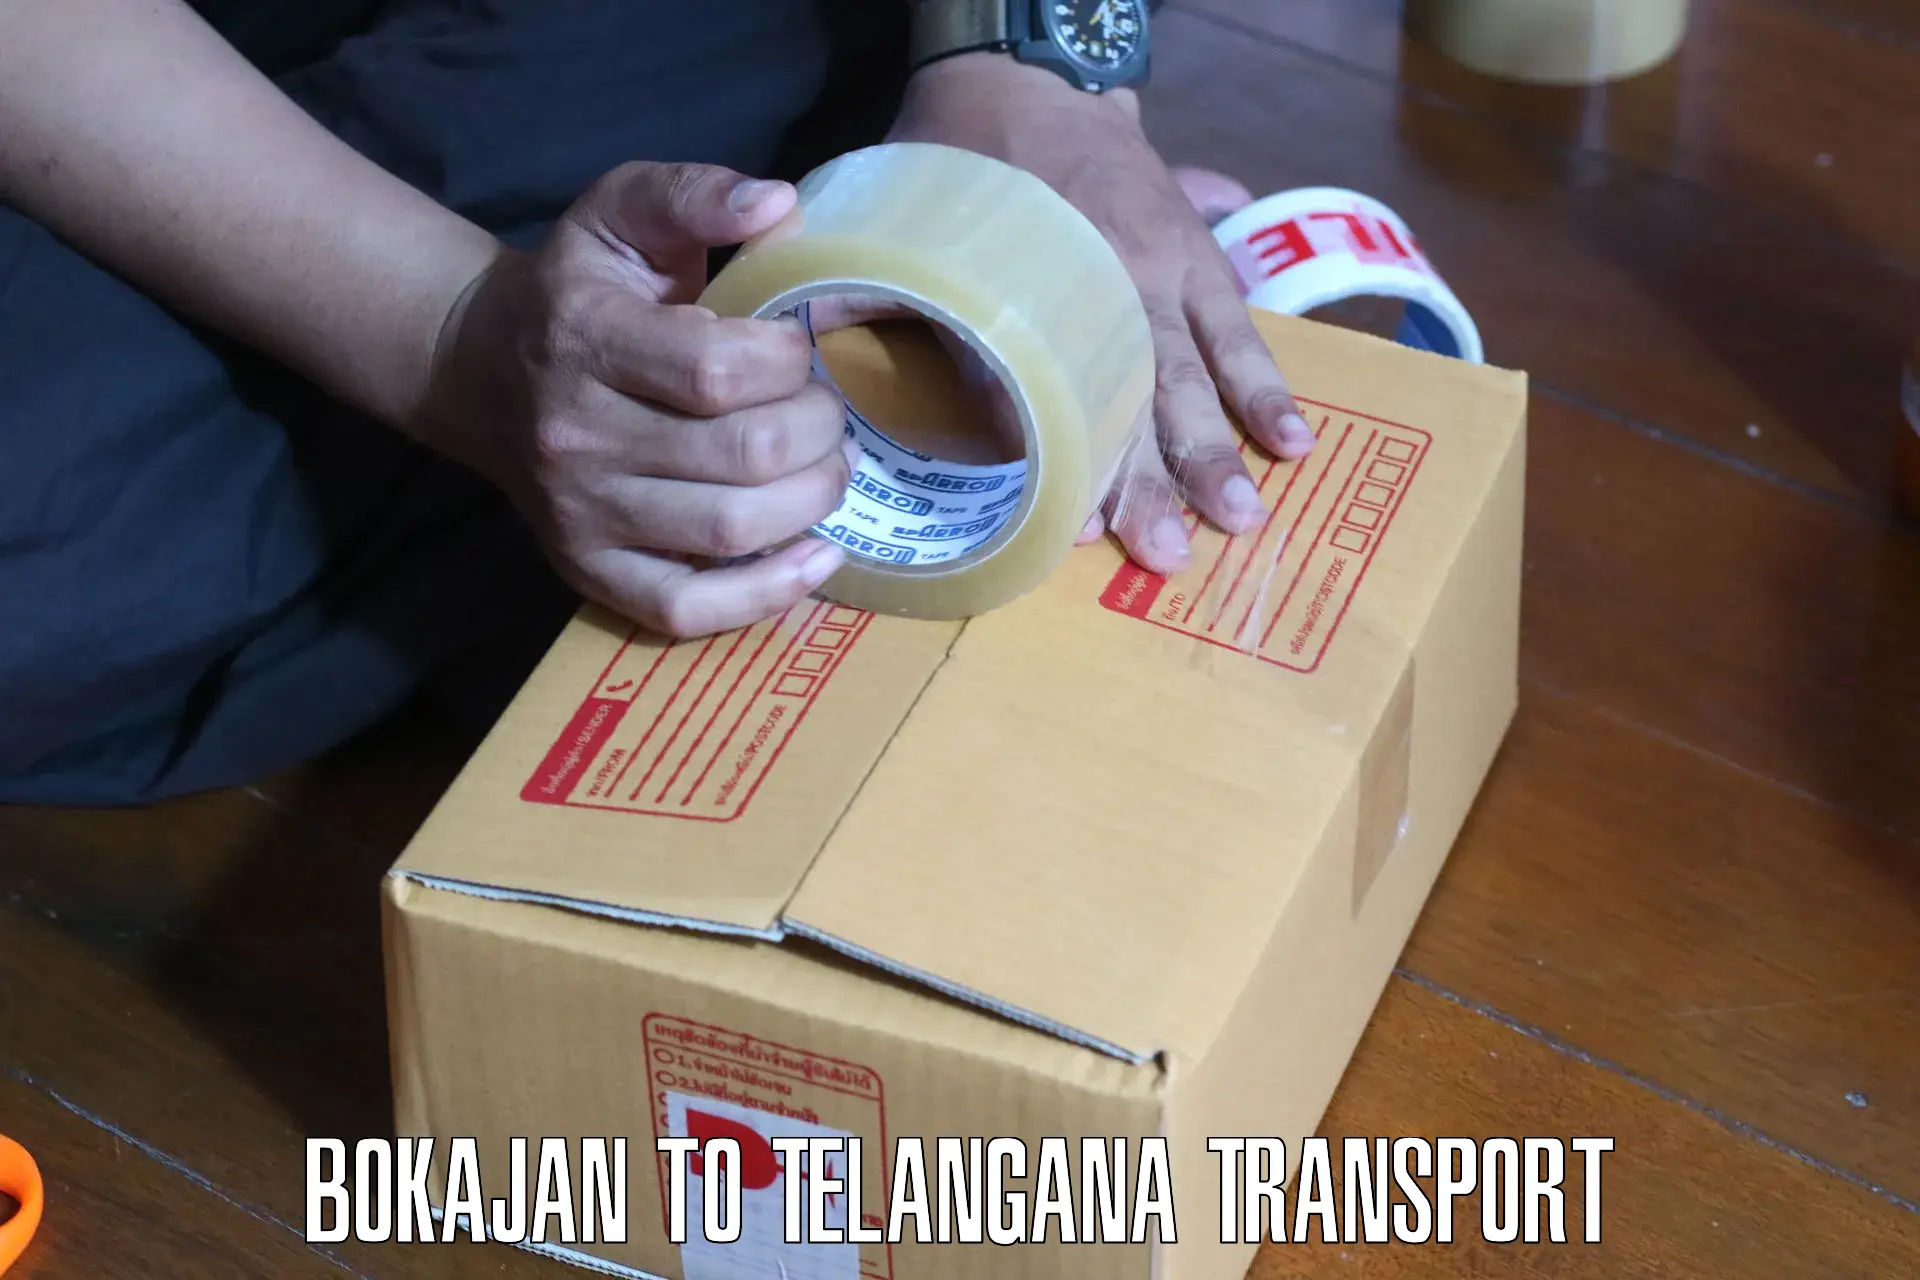 Pick up transport service Bokajan to Odela